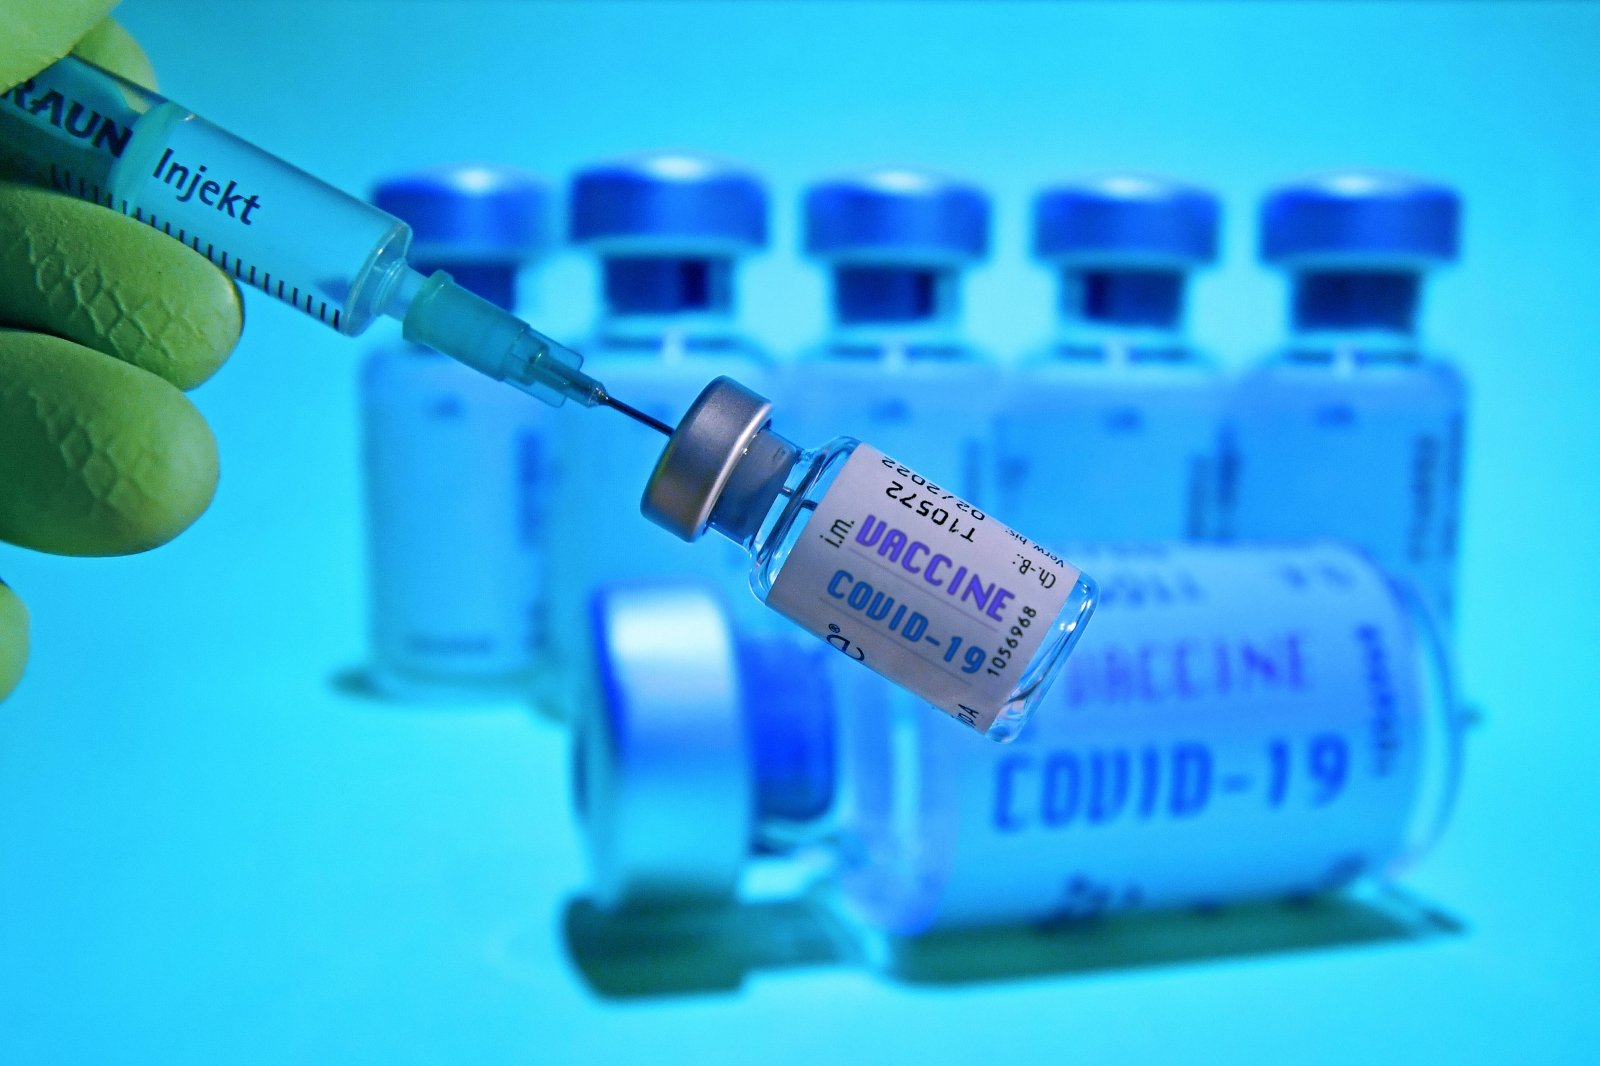 Sveikatos apsaugos ministerija (SAM) sako neturinti informacijos, kada Lietuvą pasieks trečioji COVID-19 vakcinos siunta, tuo metu šią savaitę gautą antrąją siuntą ketinama panaudoti pakartotiniam medikų skiepijimui.